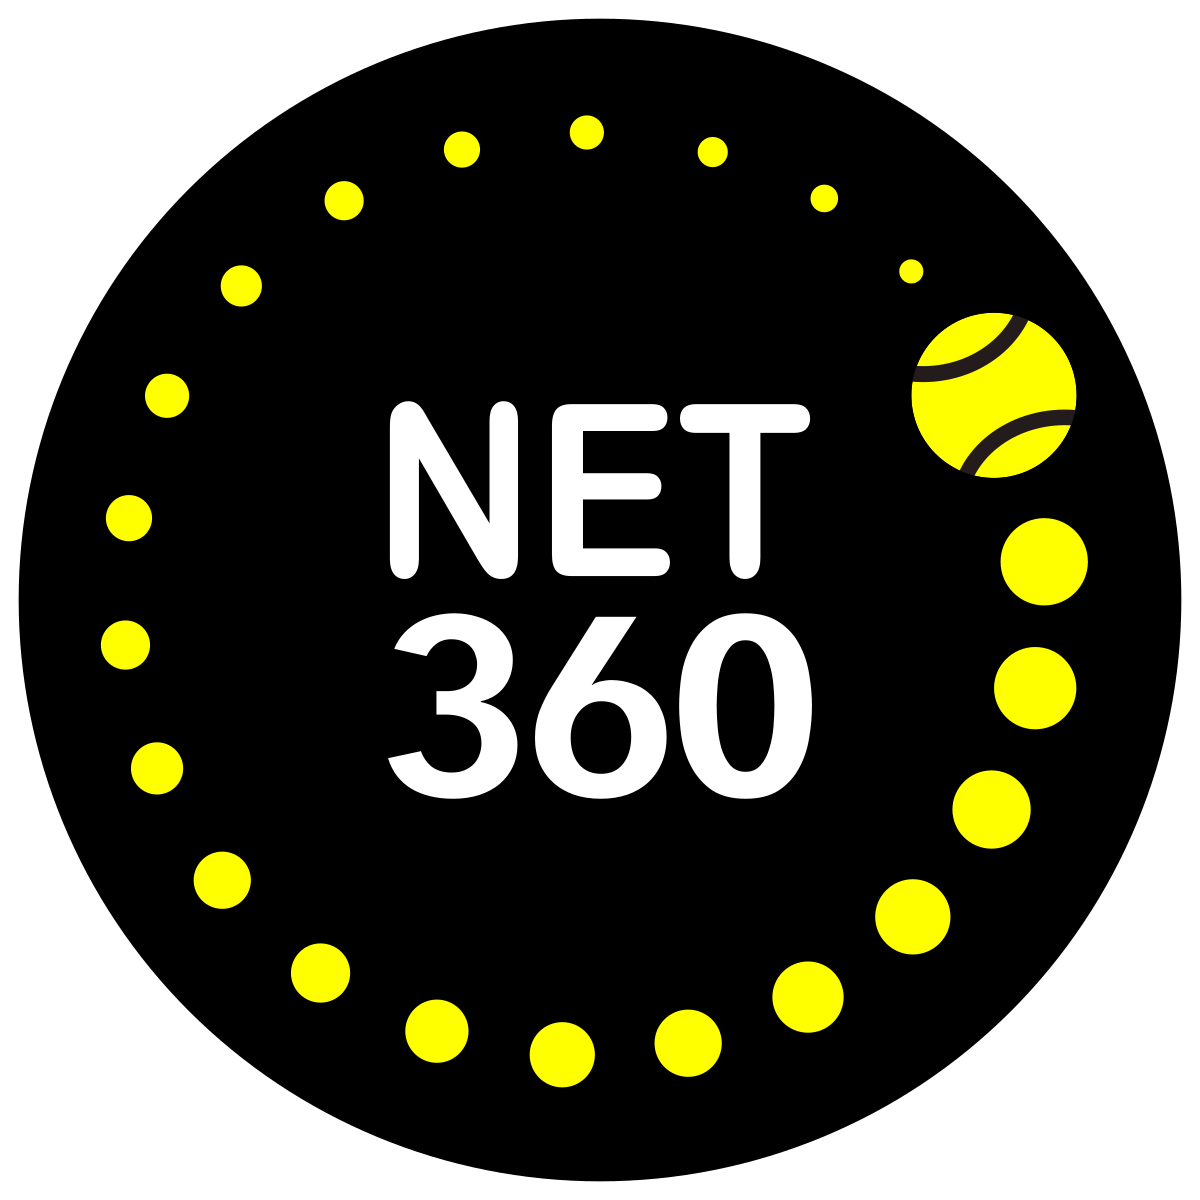 NET 360 CIC